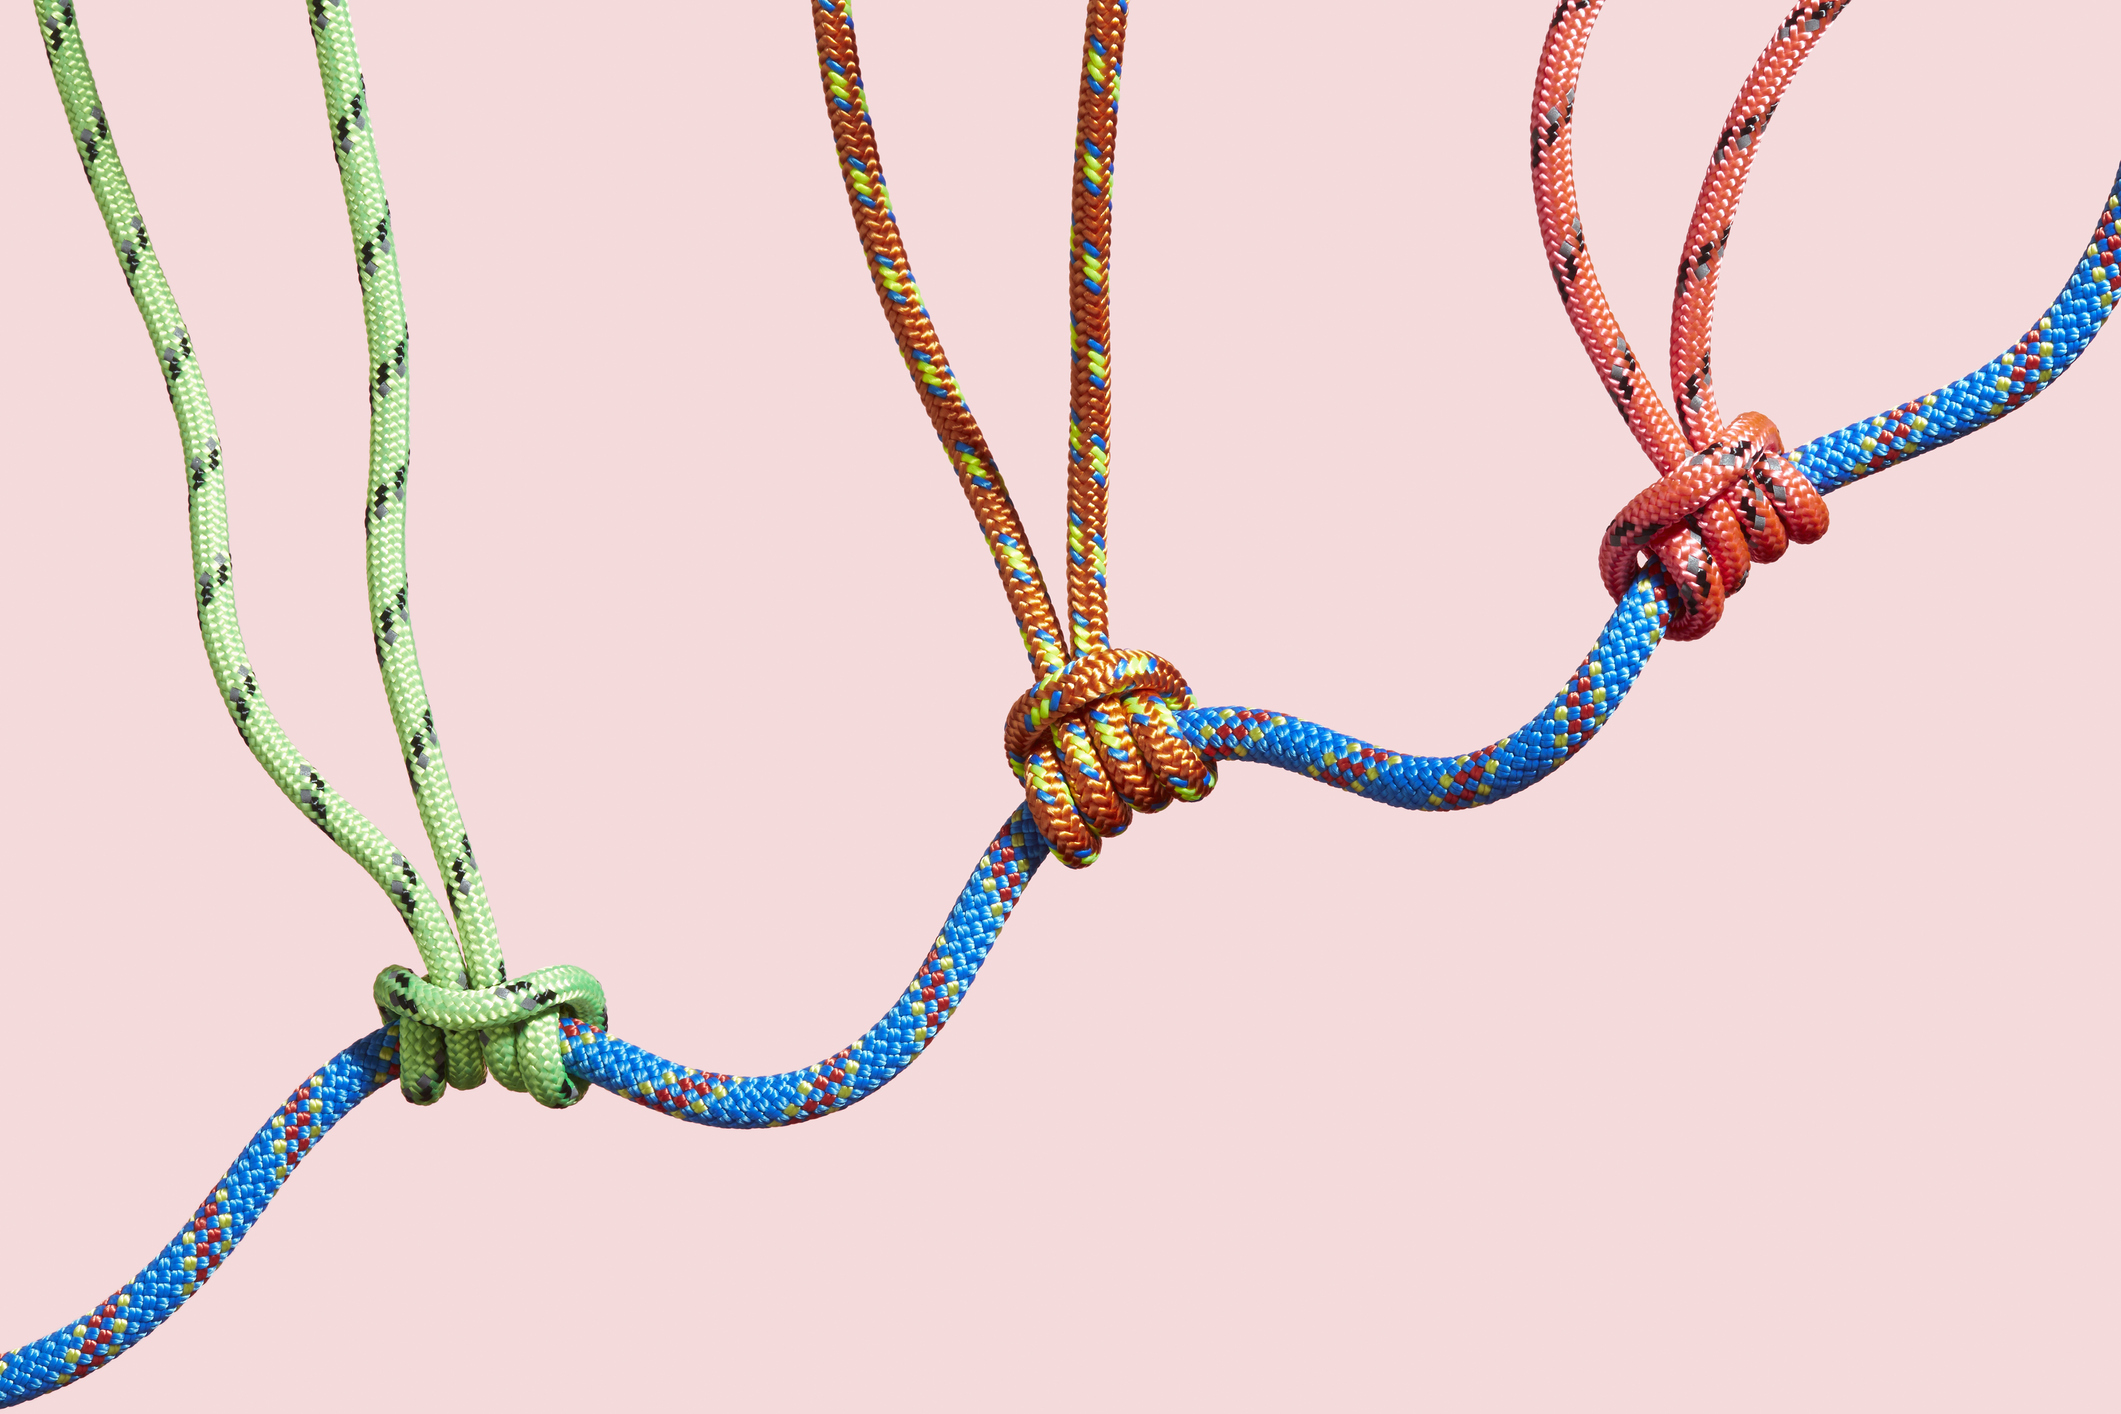 Tiga tali berwarna menopang tali yang lebih besar